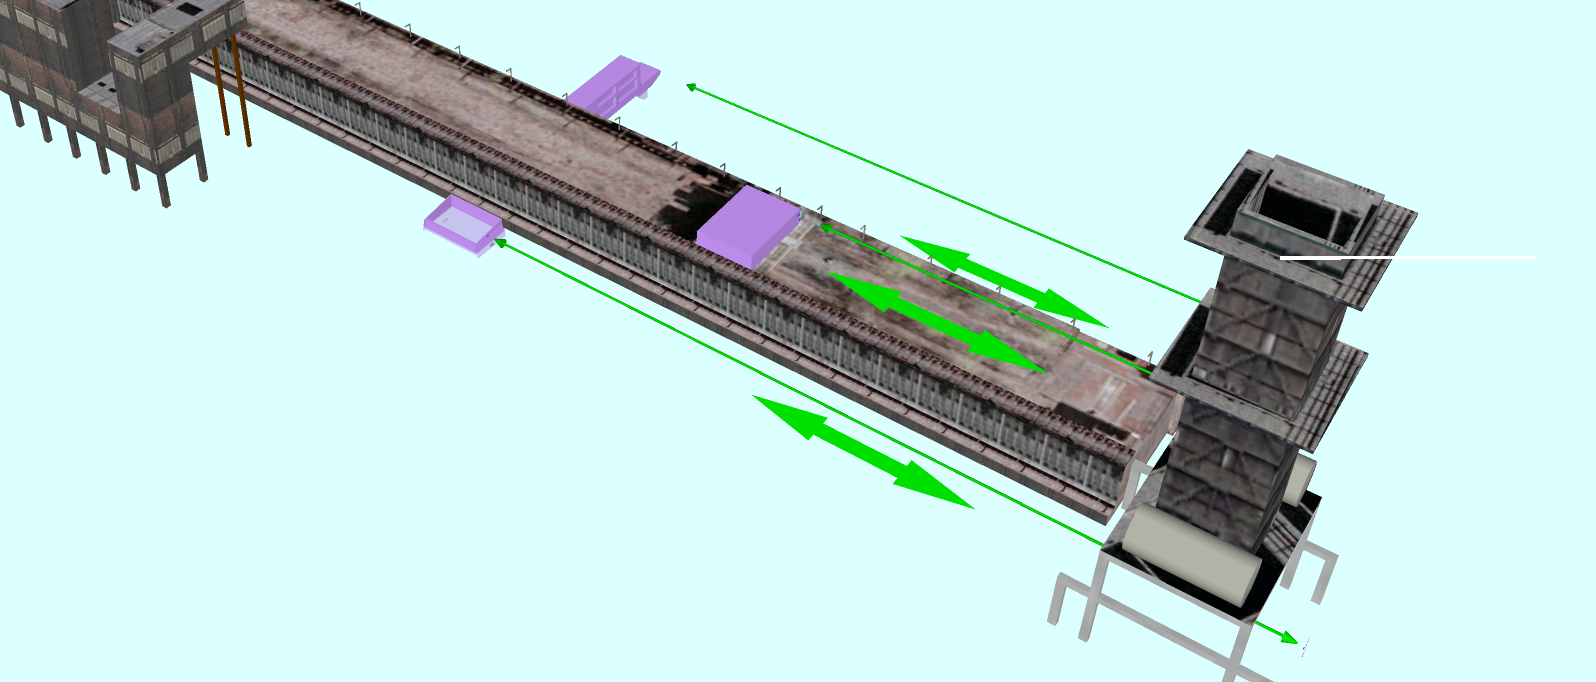 Коксовая батарея - определение места толкания, наполнения и тушения вагонов (нажмите на изображение, чтобы увеличить его)